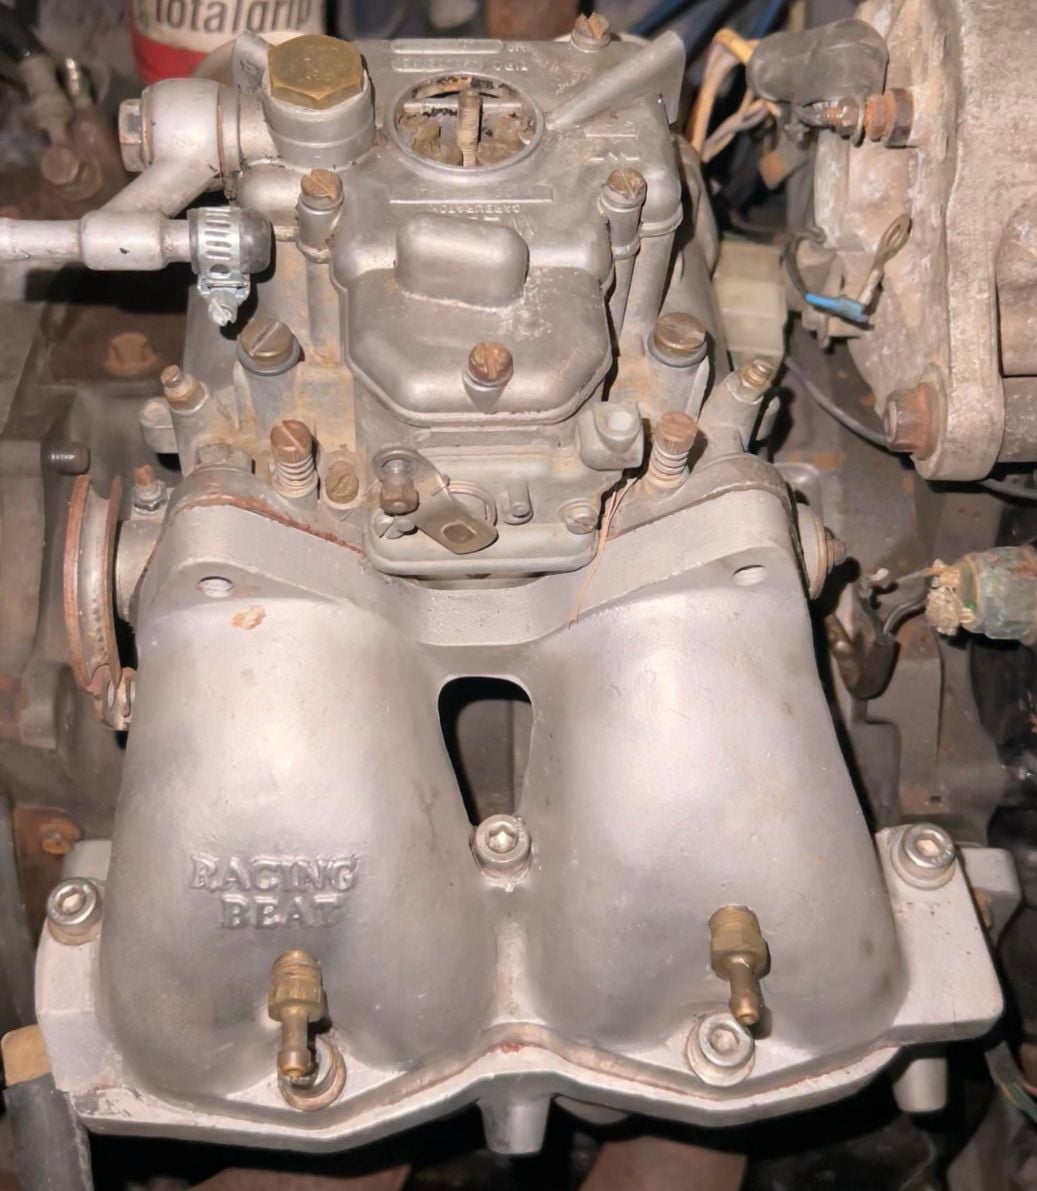 Engine - Intake/Fuel - Weber 45 DCOE 12A - Used - 1980 to 1985 Mazda RX-7 - Lakeland, FL 33812, United States